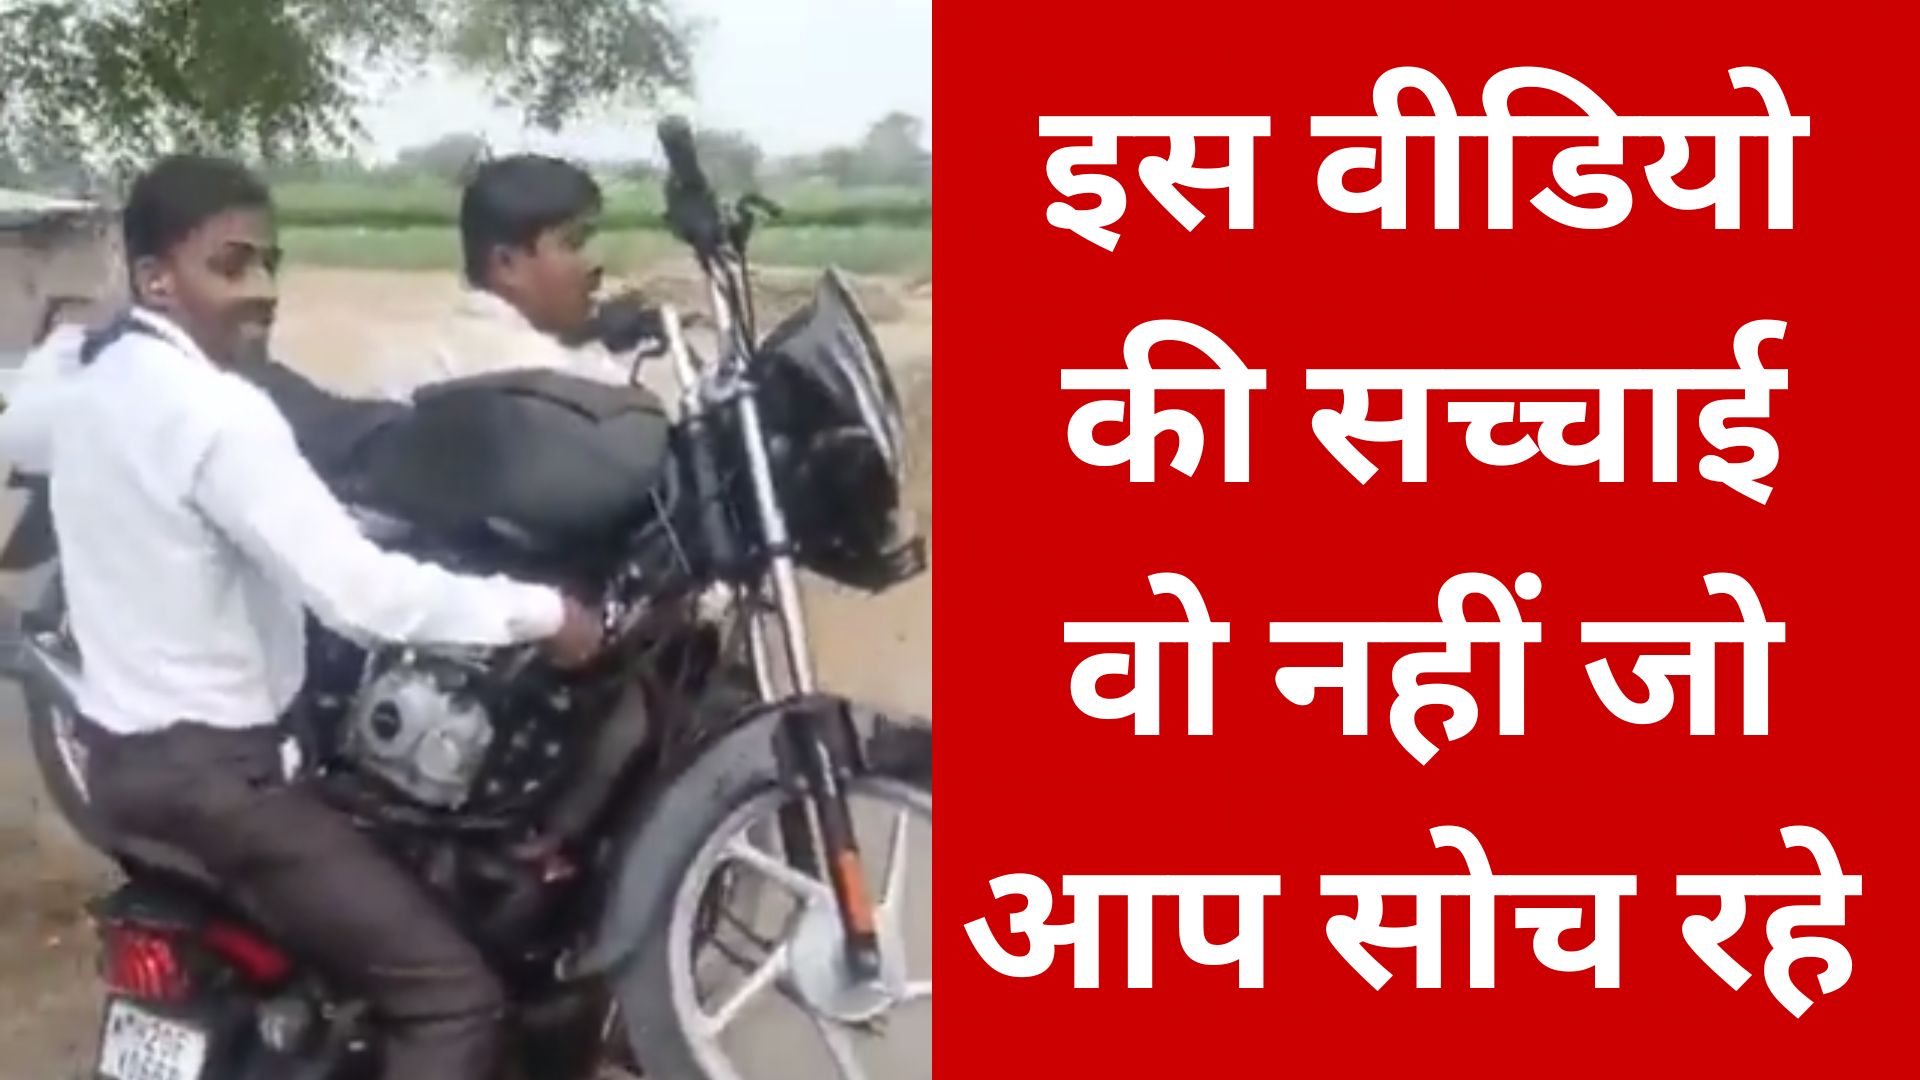 Video : बाइक पर उठा ले गए मोटरसाइकिल, लोगों को लगा देशी जुगाड़, लेकिन सच्चाई यहां है  